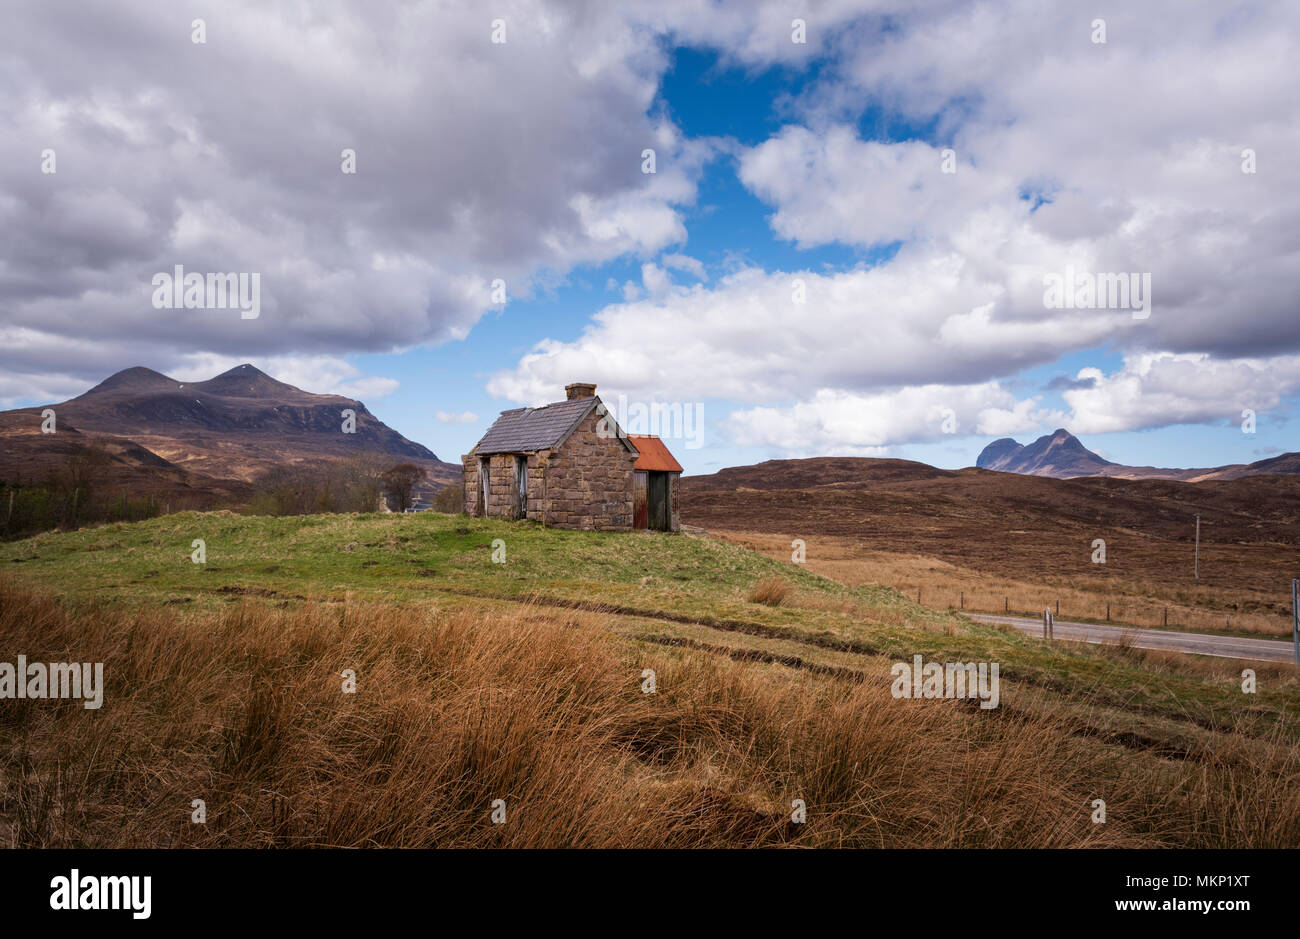 Granja abandonada de la casa o edificio byre croft en remoto paisaje de North West Highlands de Escocia. Las montañas L A R Cul Mor y Suilven Foto de stock